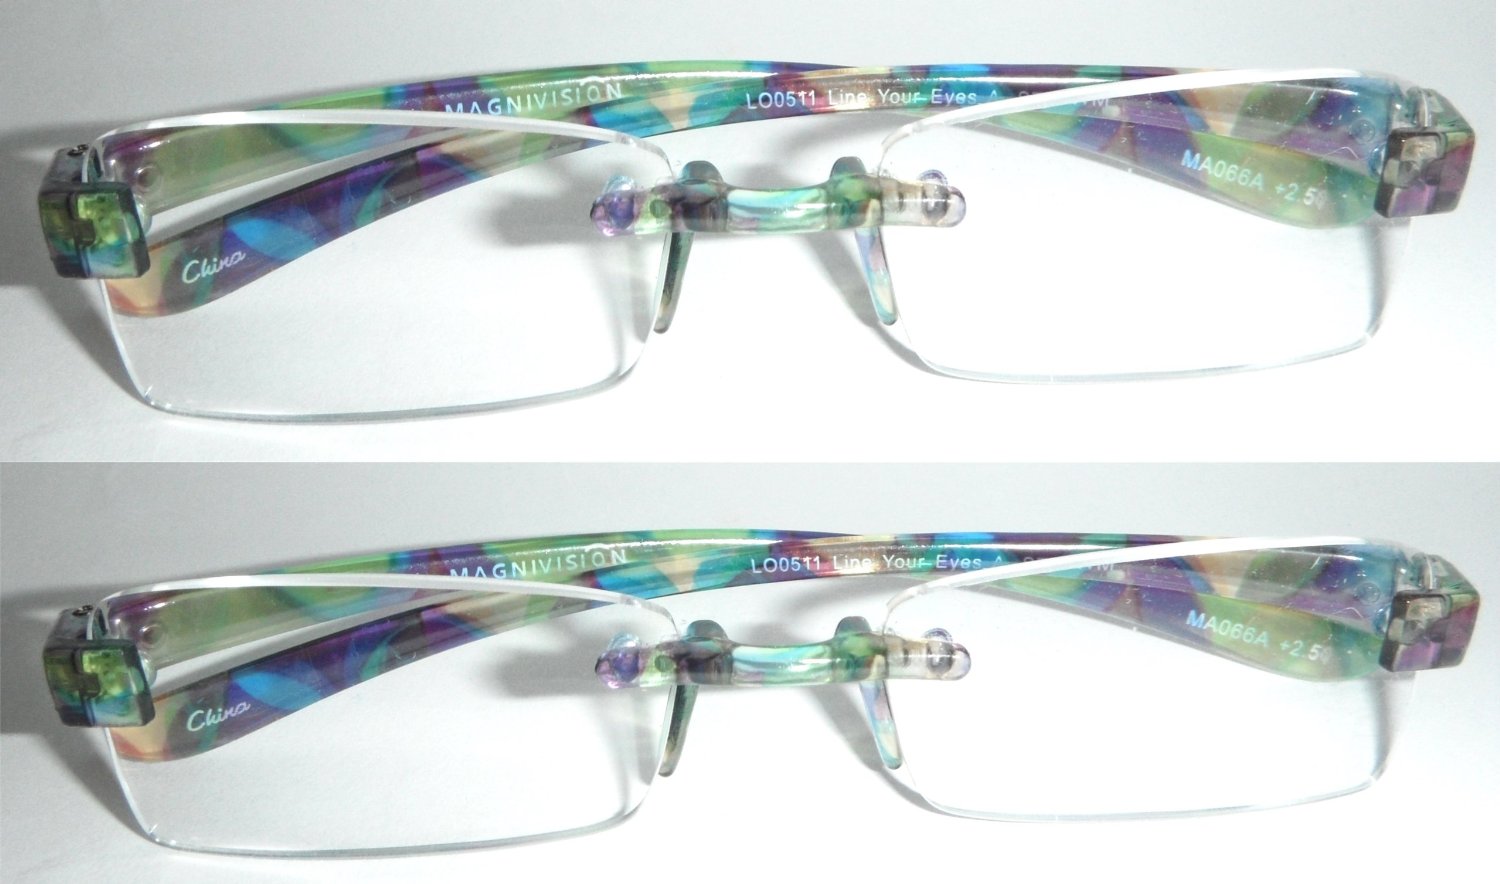 Magnivision Featherlight Rimless Frameless Reading Glasses